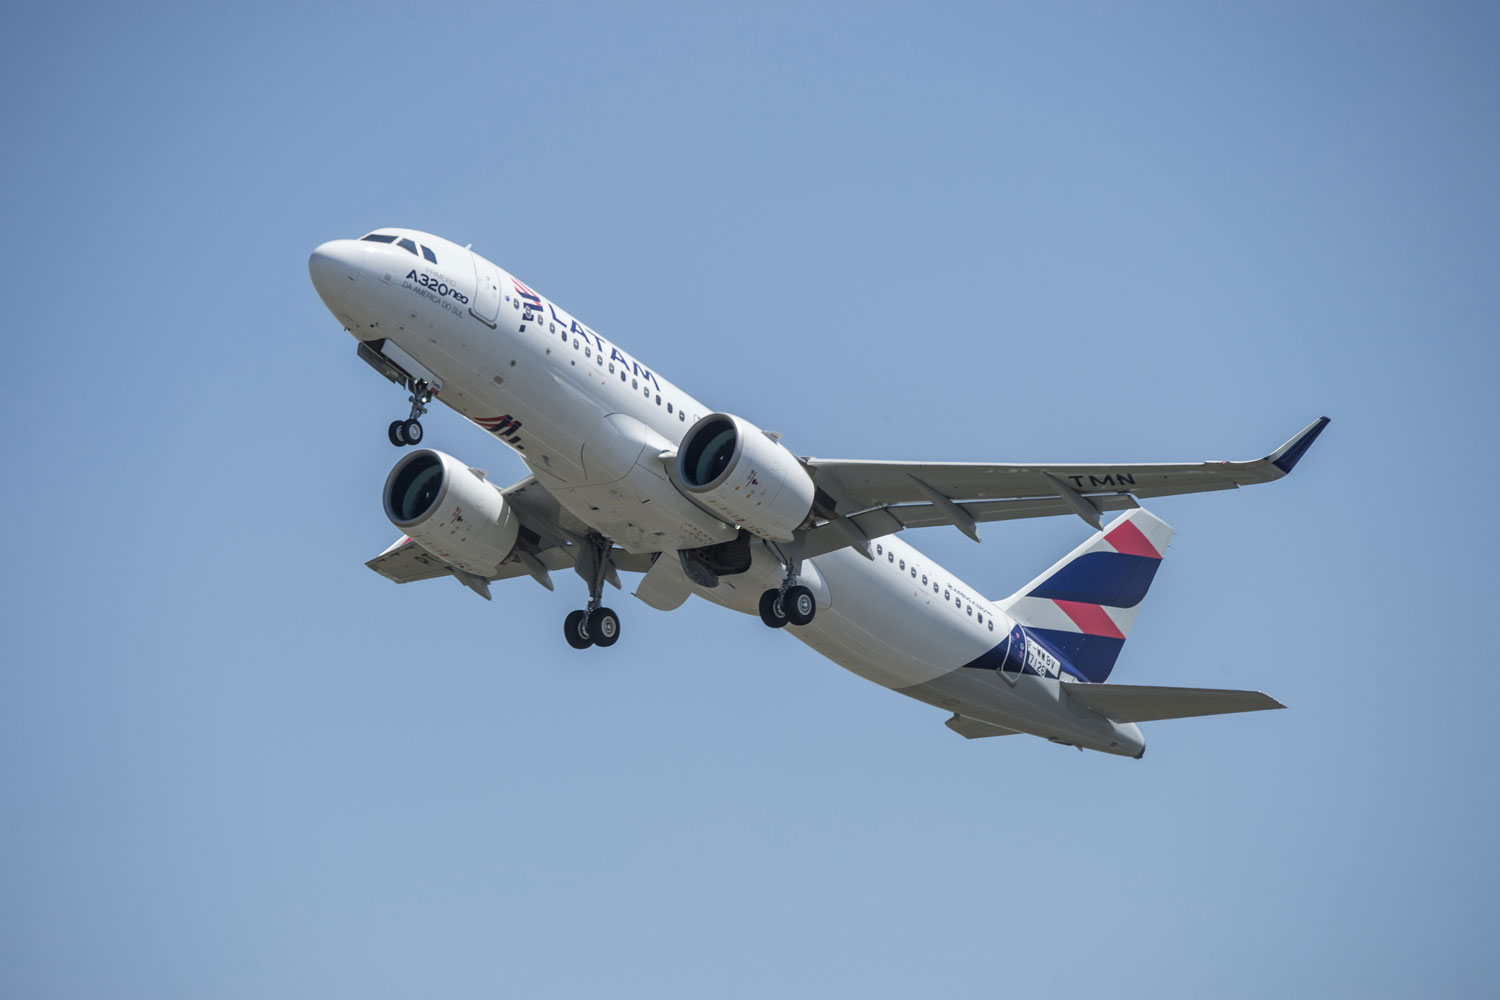 LATAM Brasil recebe mais um A321neo